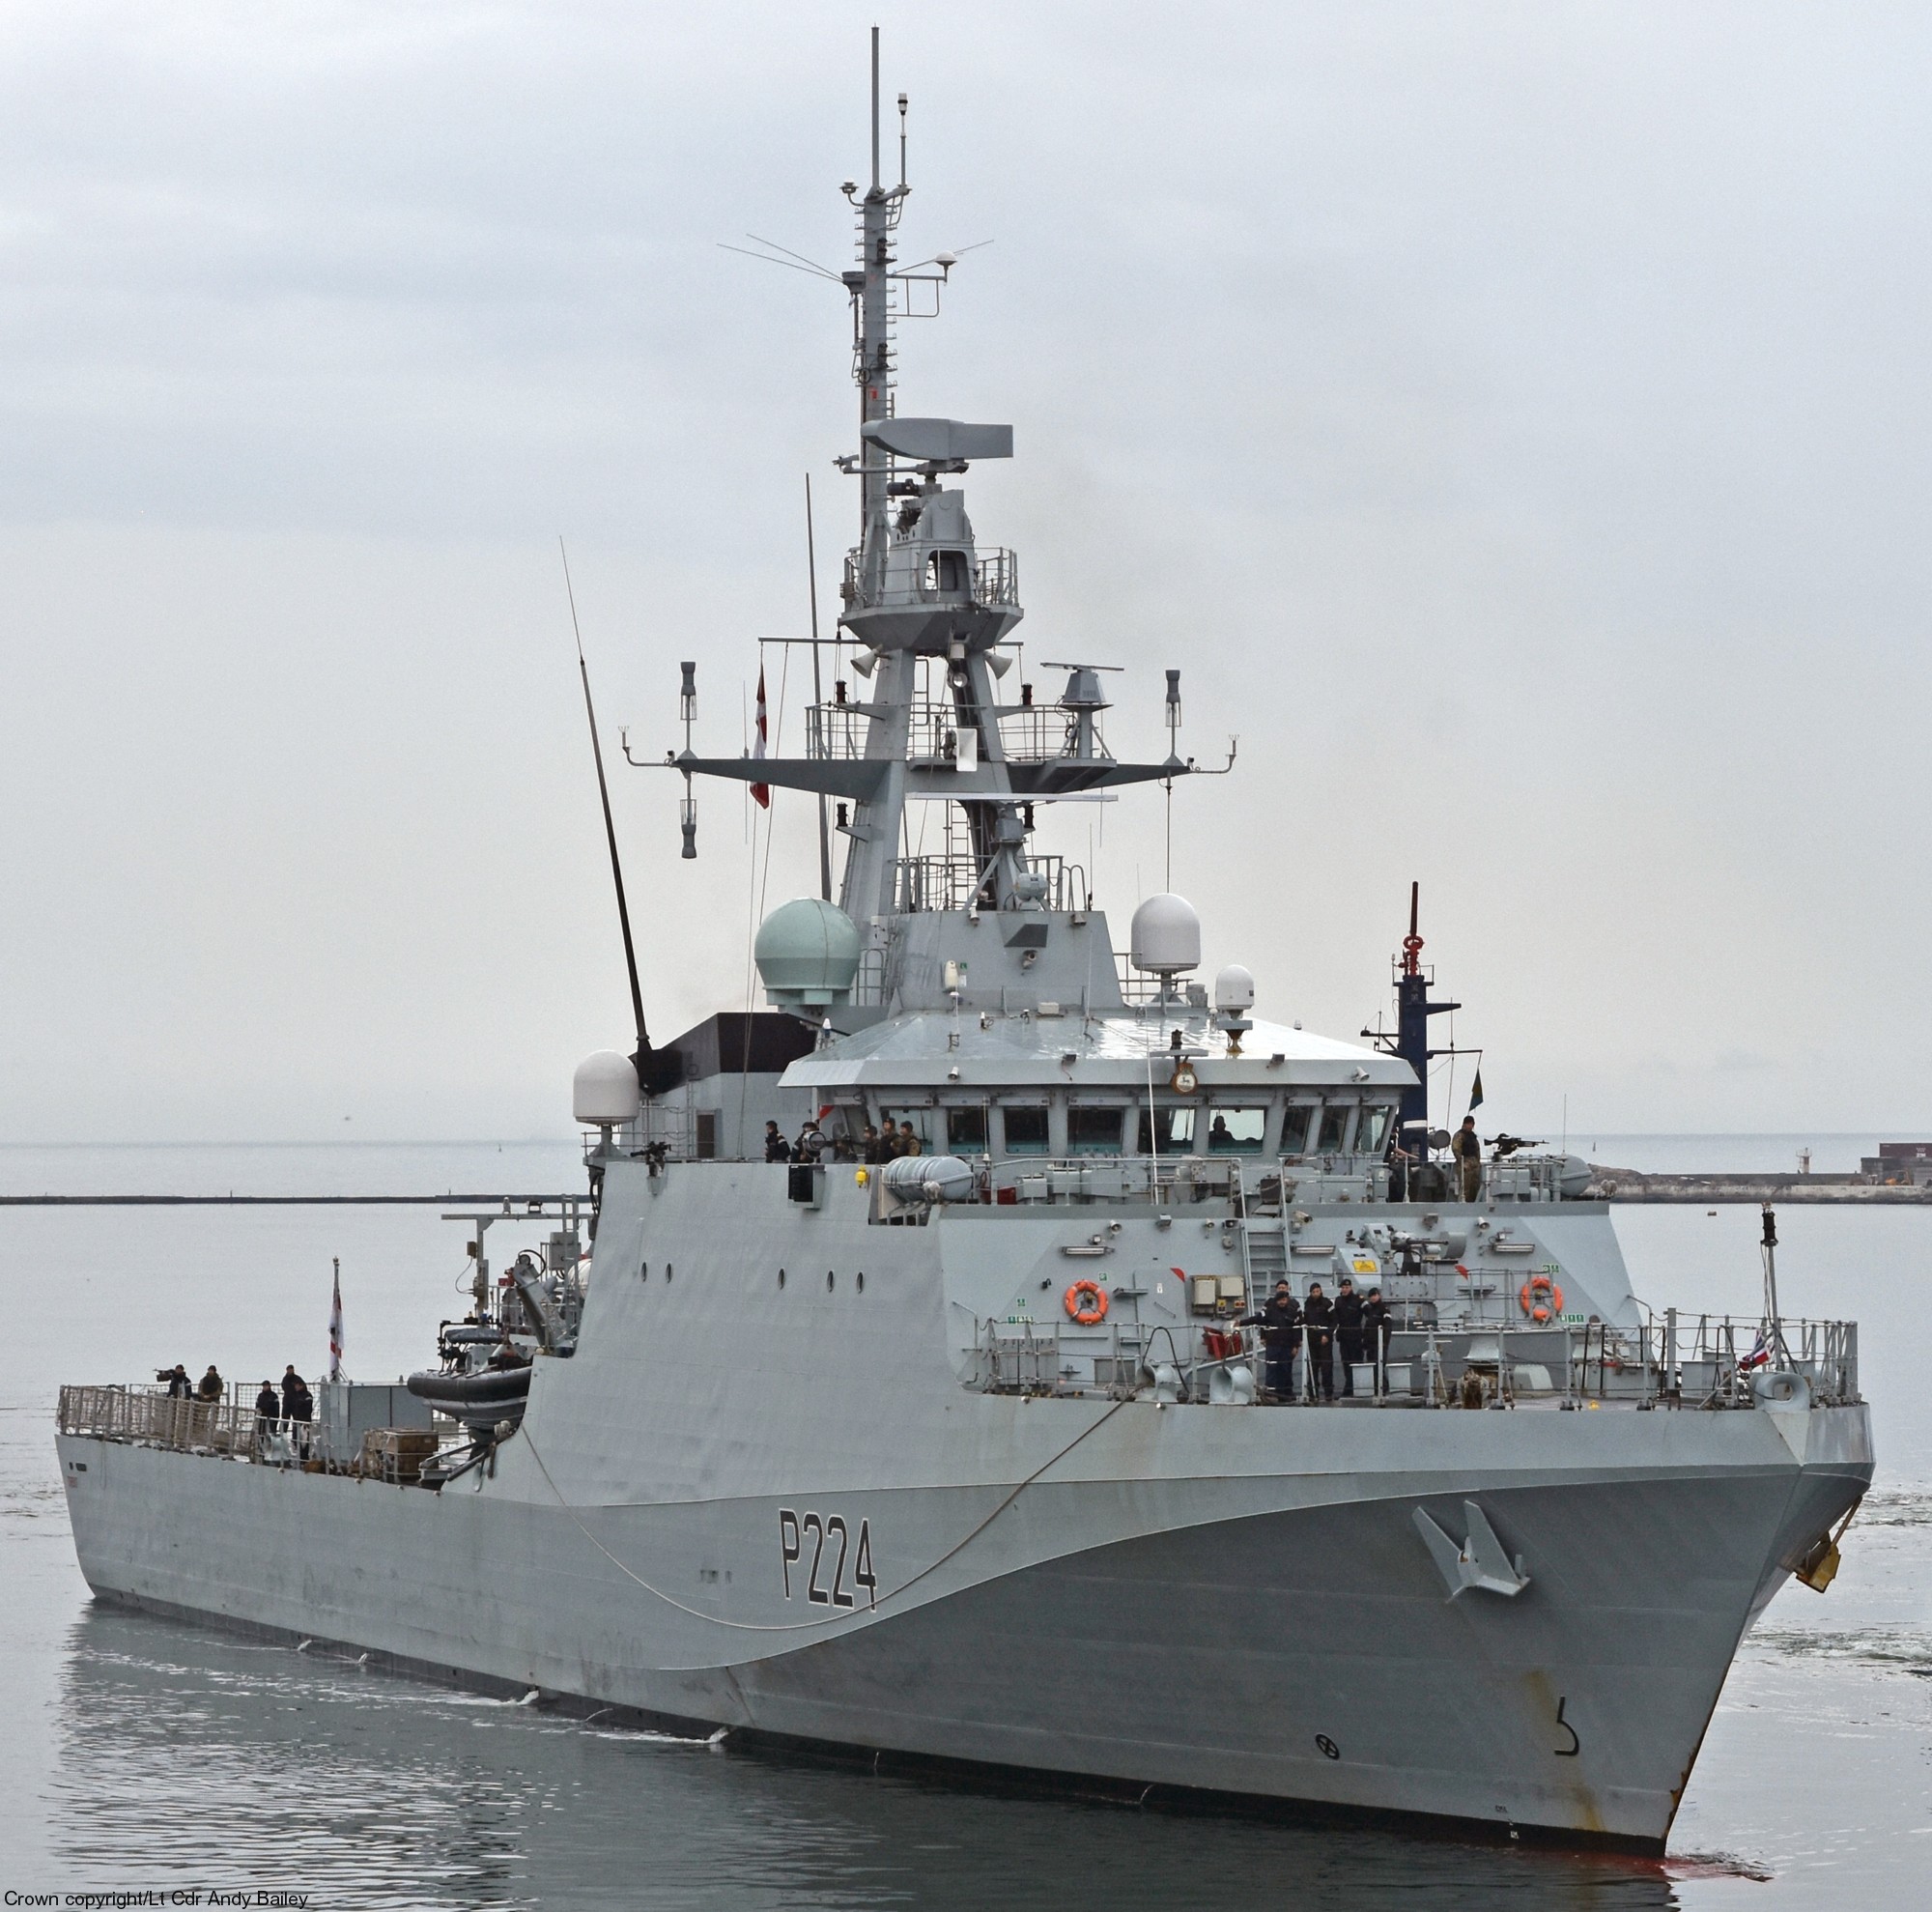 p-224 hms trent river class offshore patrol vessel opv royal navy ds30m machine gun 27